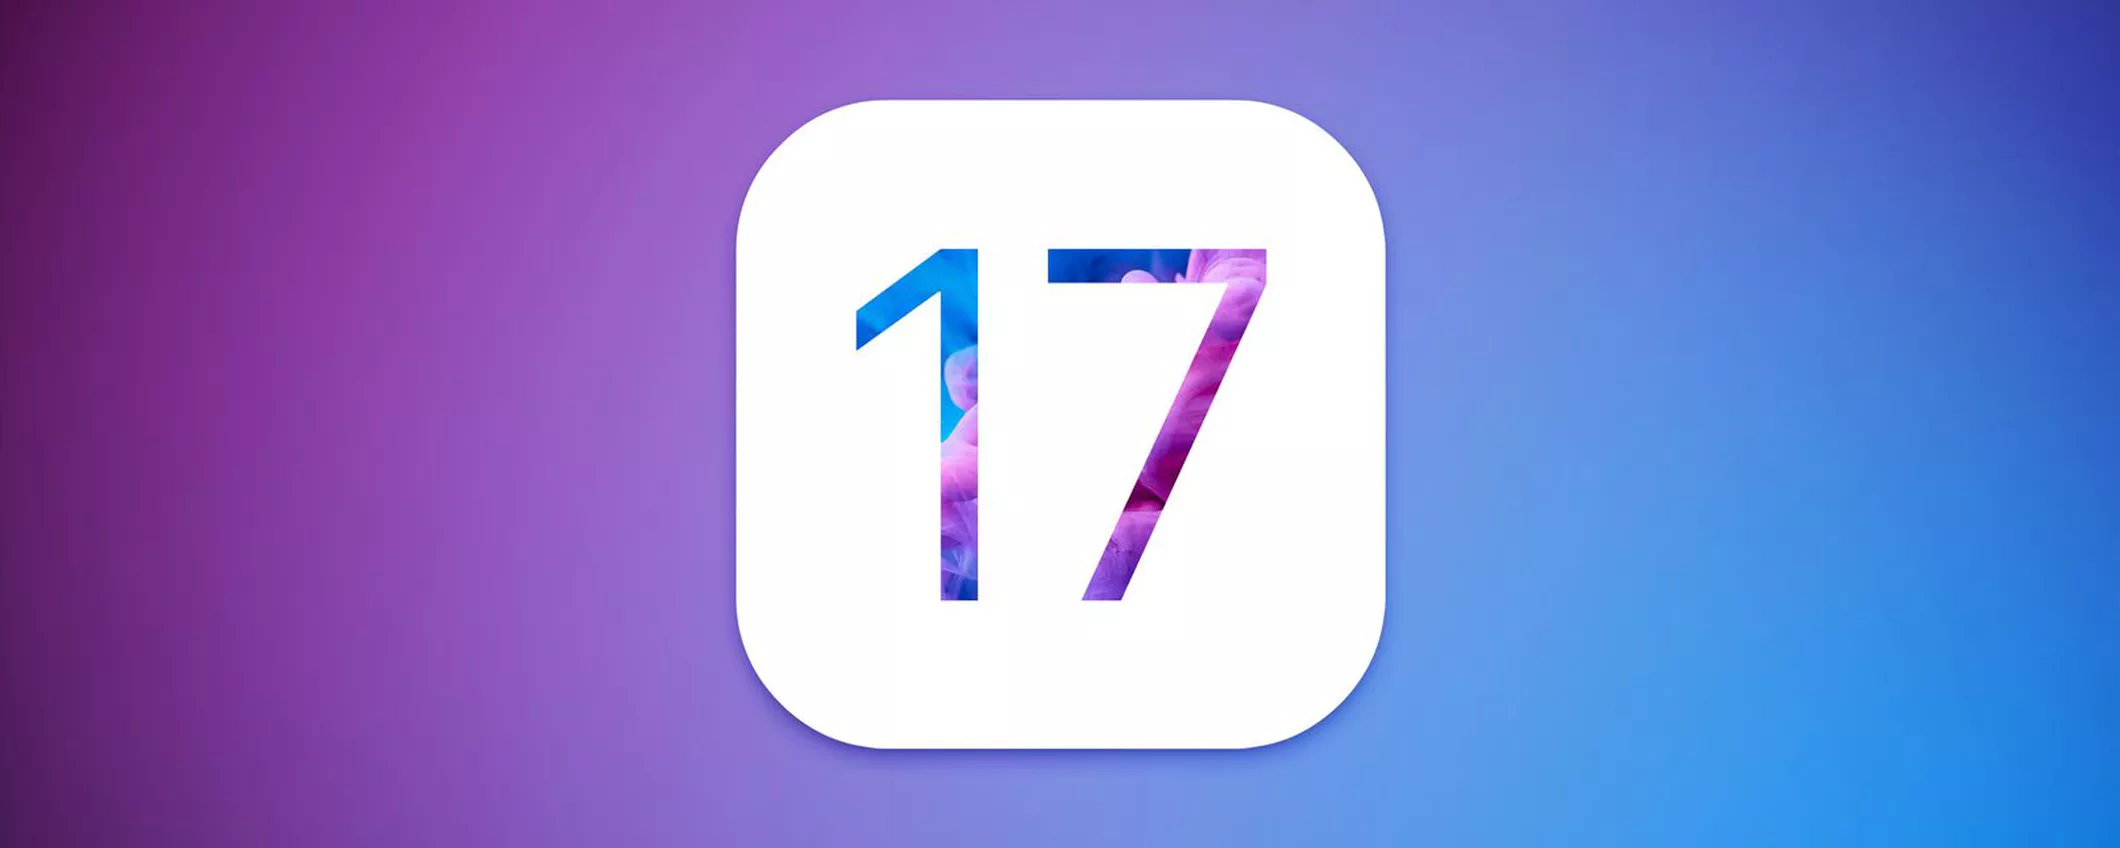 iOS 17: ecco quando arriva, le feature attese e gli iPhone compatibili